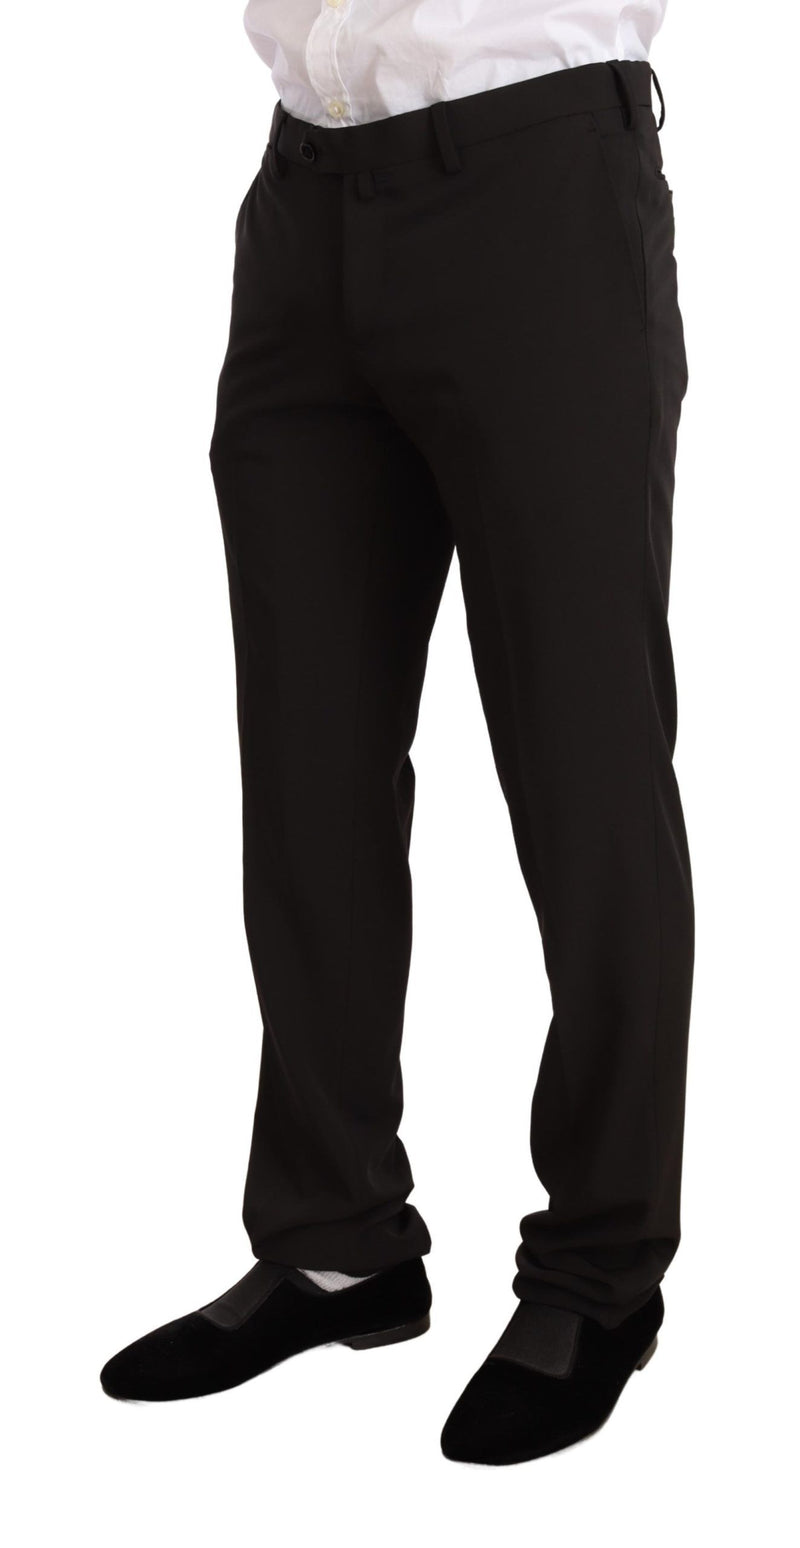 Domenico Tagliente Elegant Black Slim Fit Two-Piece Men's Suit